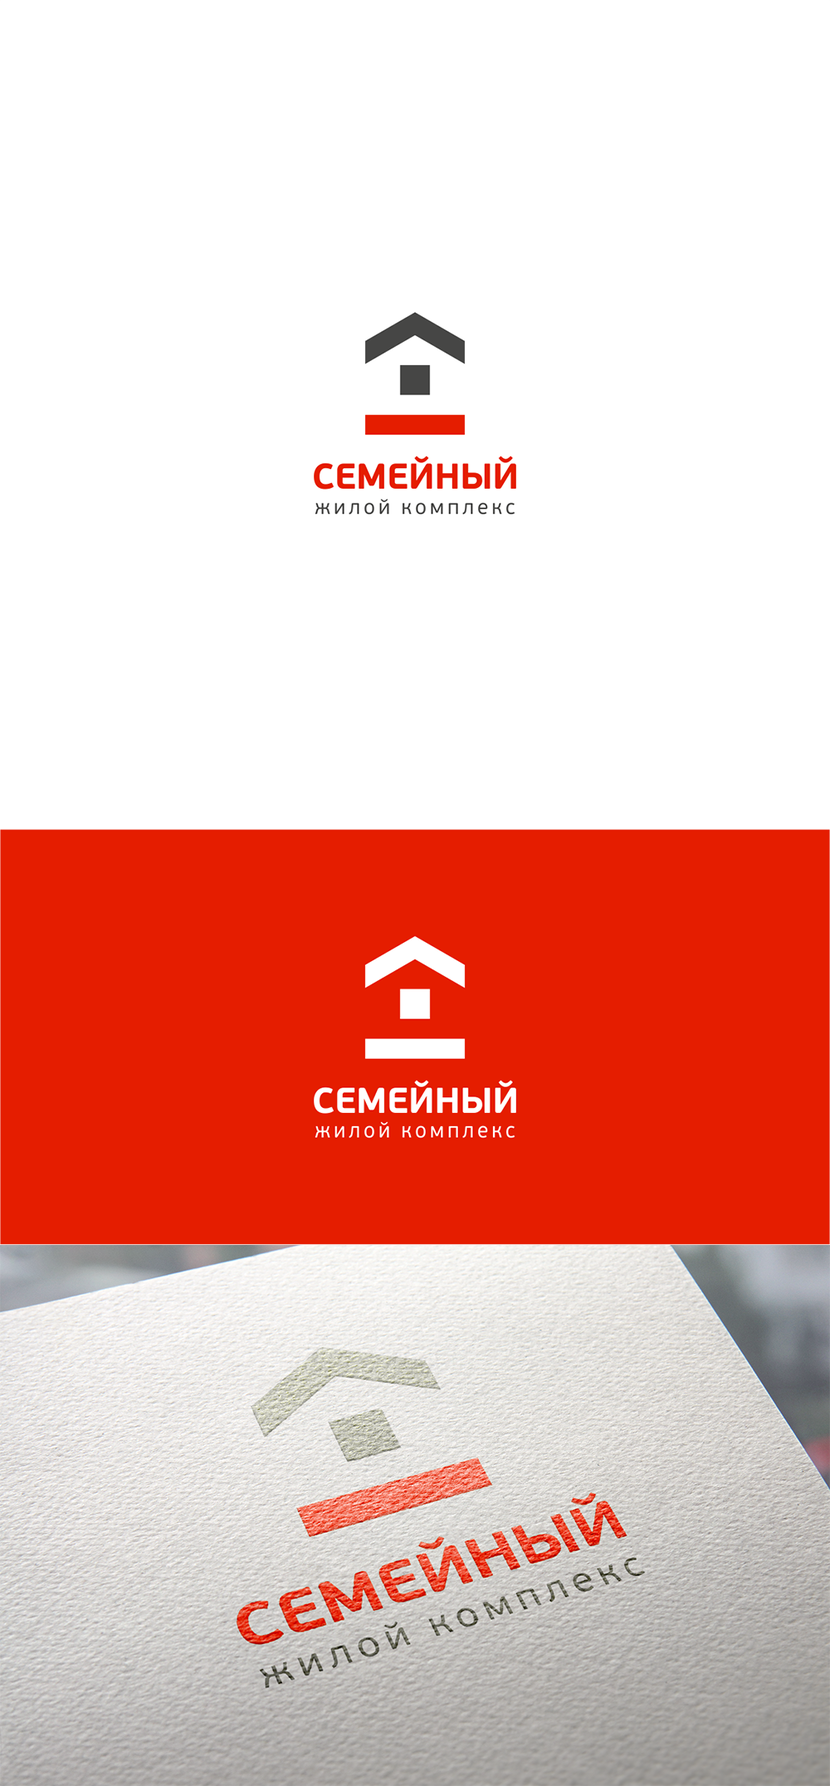 + - Разработка логотипа жилого комплекса "Семейный"